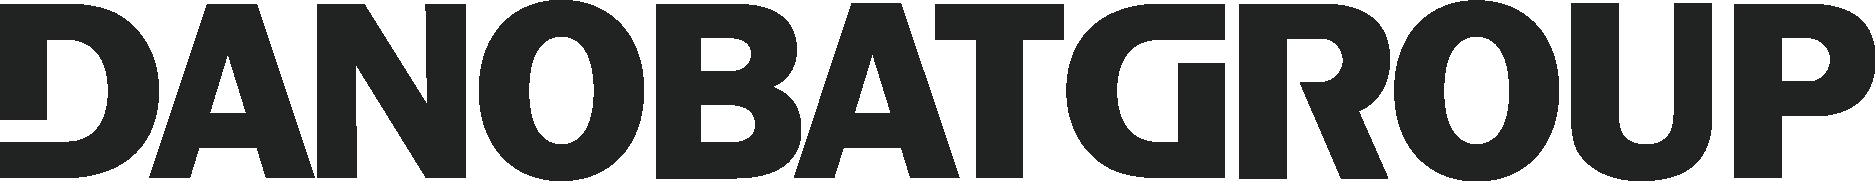 Danobatgroup Wordmark Logo Vector